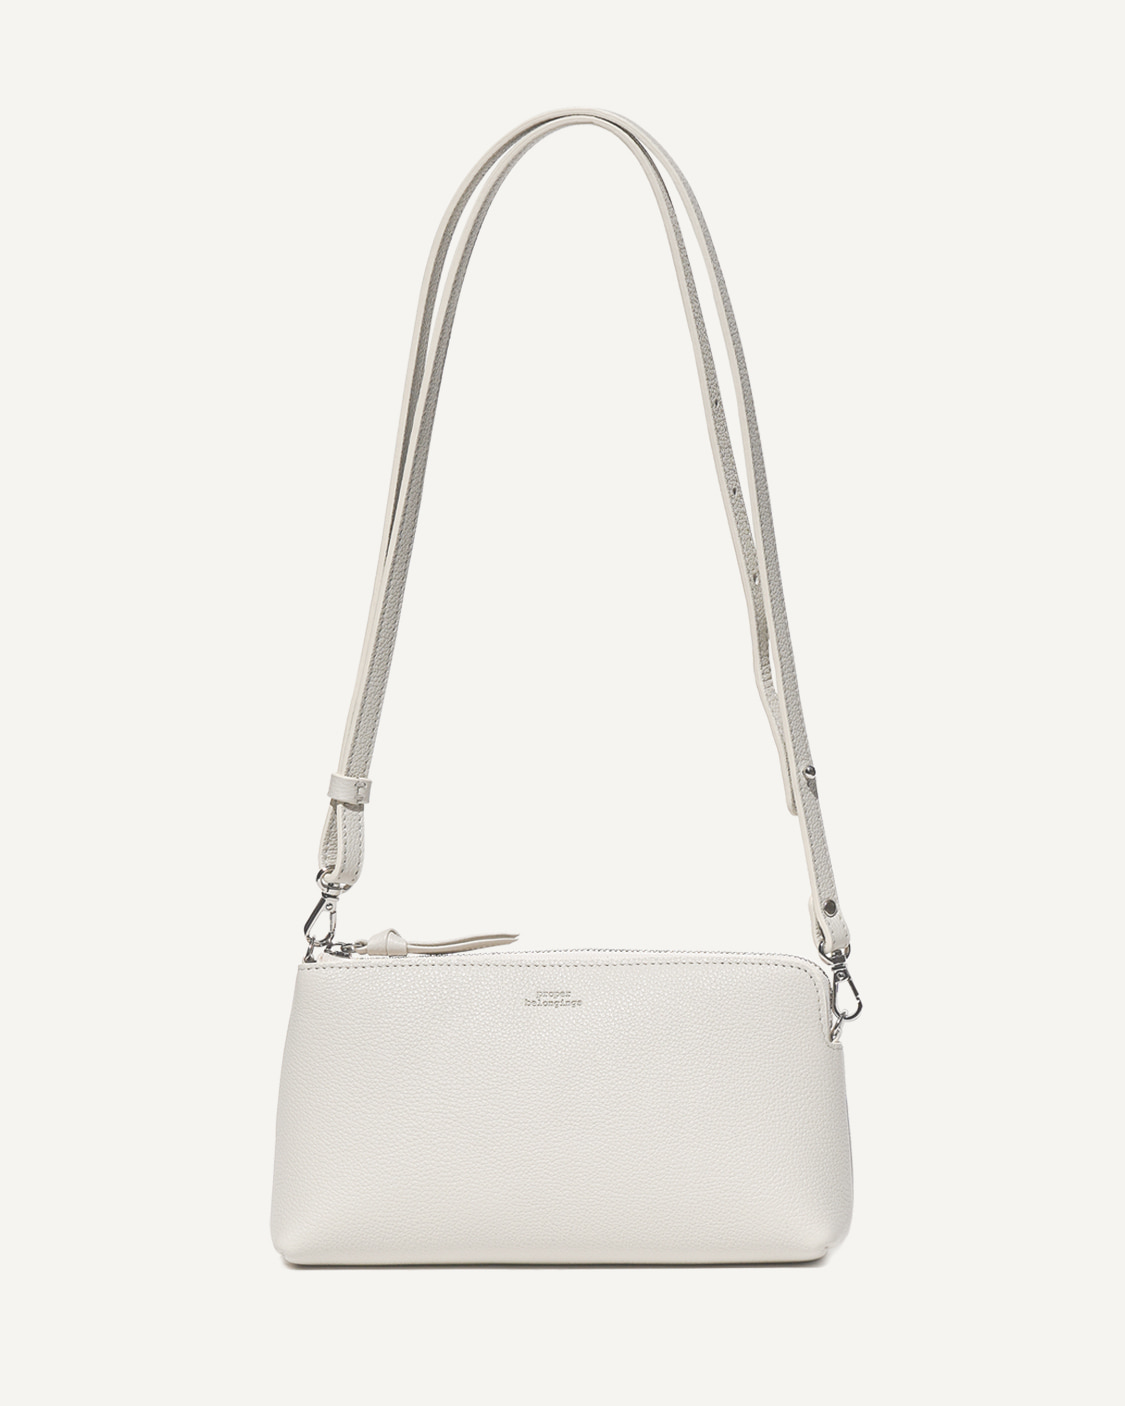 [재입고 예정] Zipper Mini Bag (지퍼 미니백) / Light gray